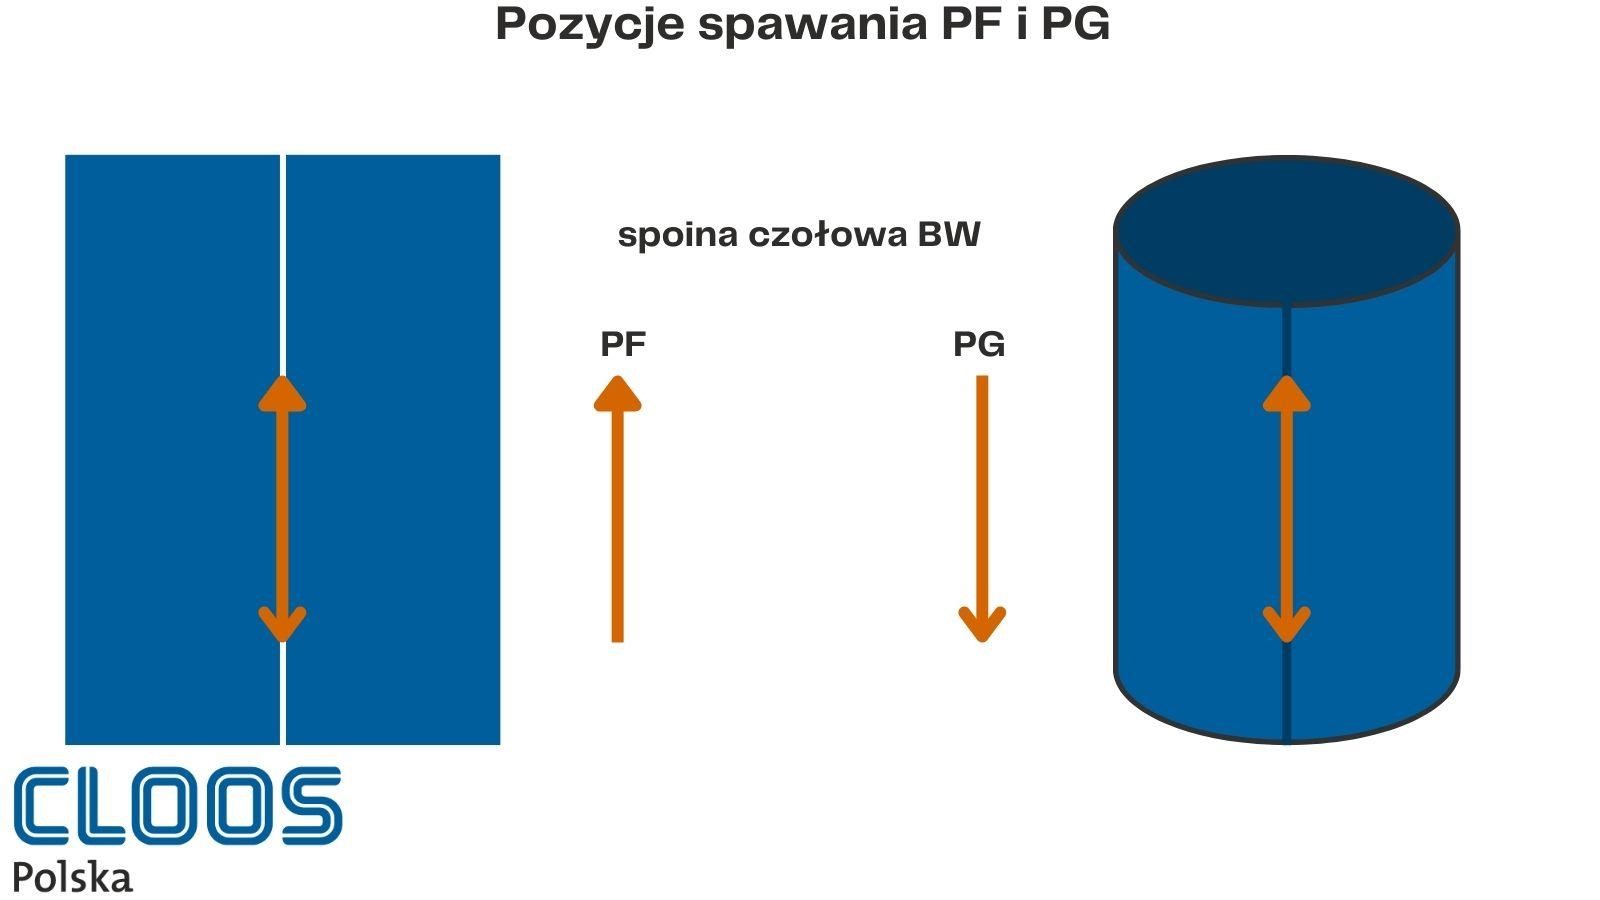 Ilustracja opisująca przykłady stosowania pozycji spawania PF i PG